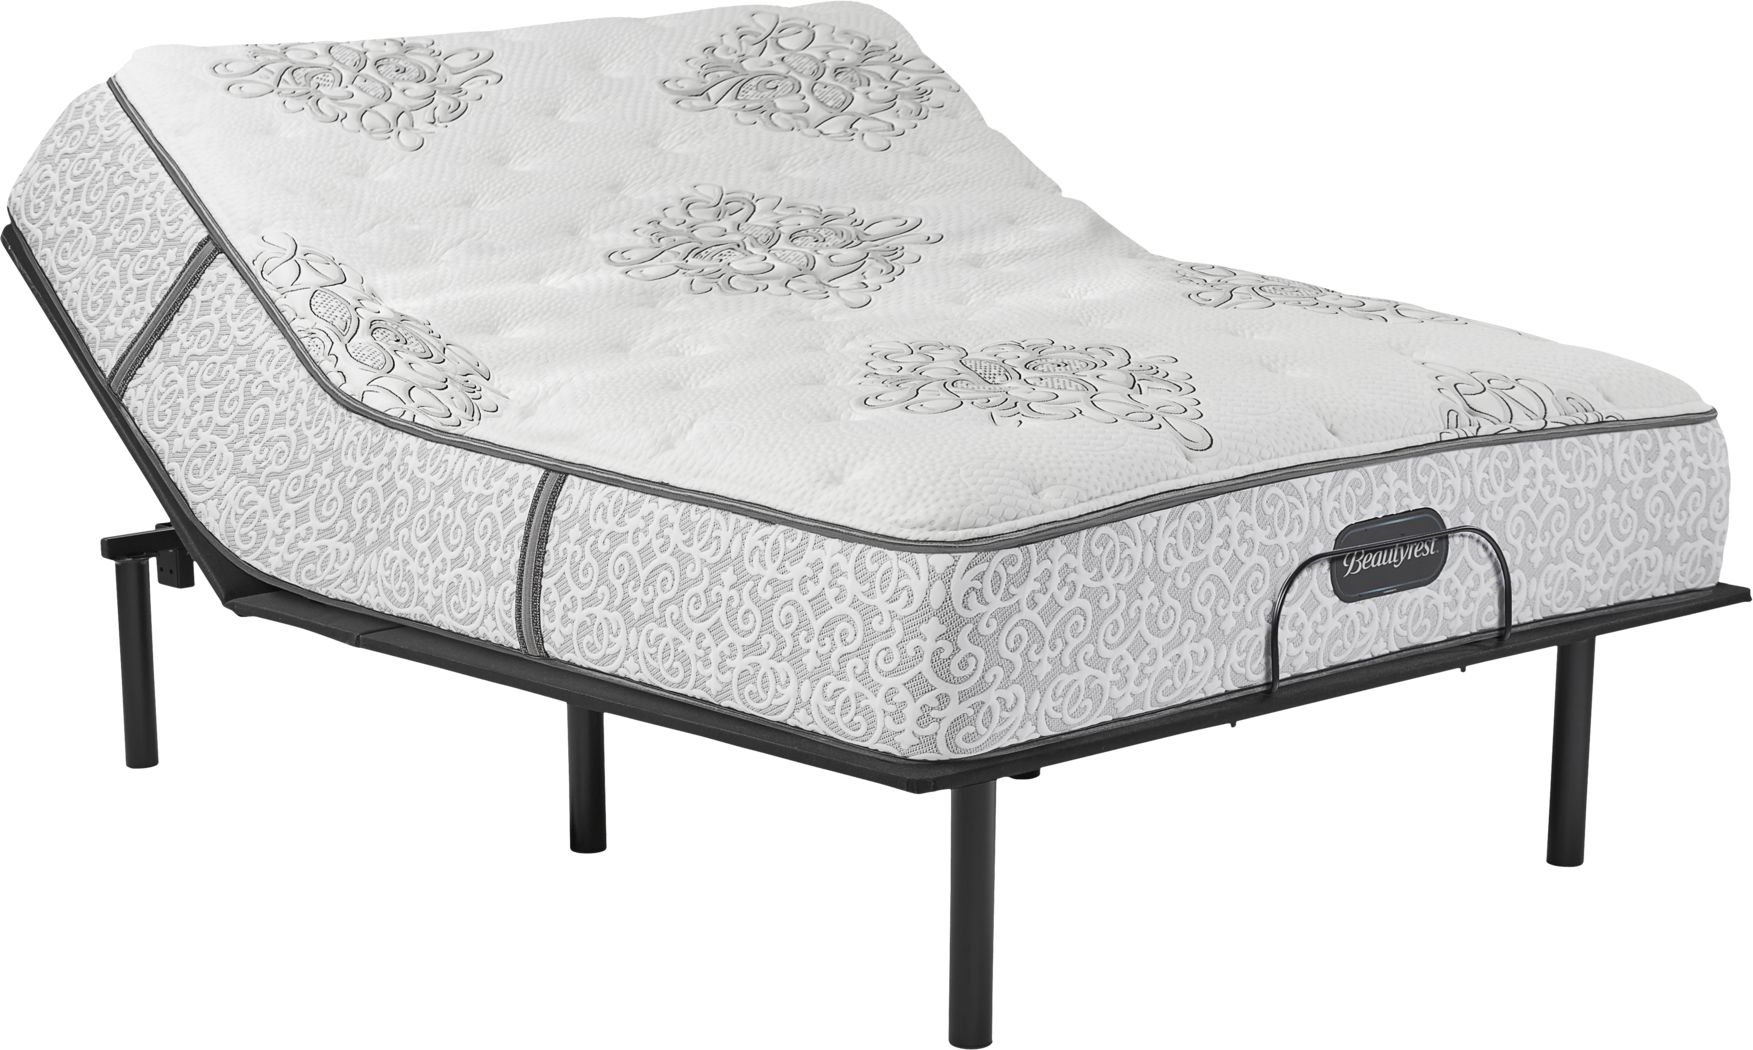 beautyrest legend plush queen mattress